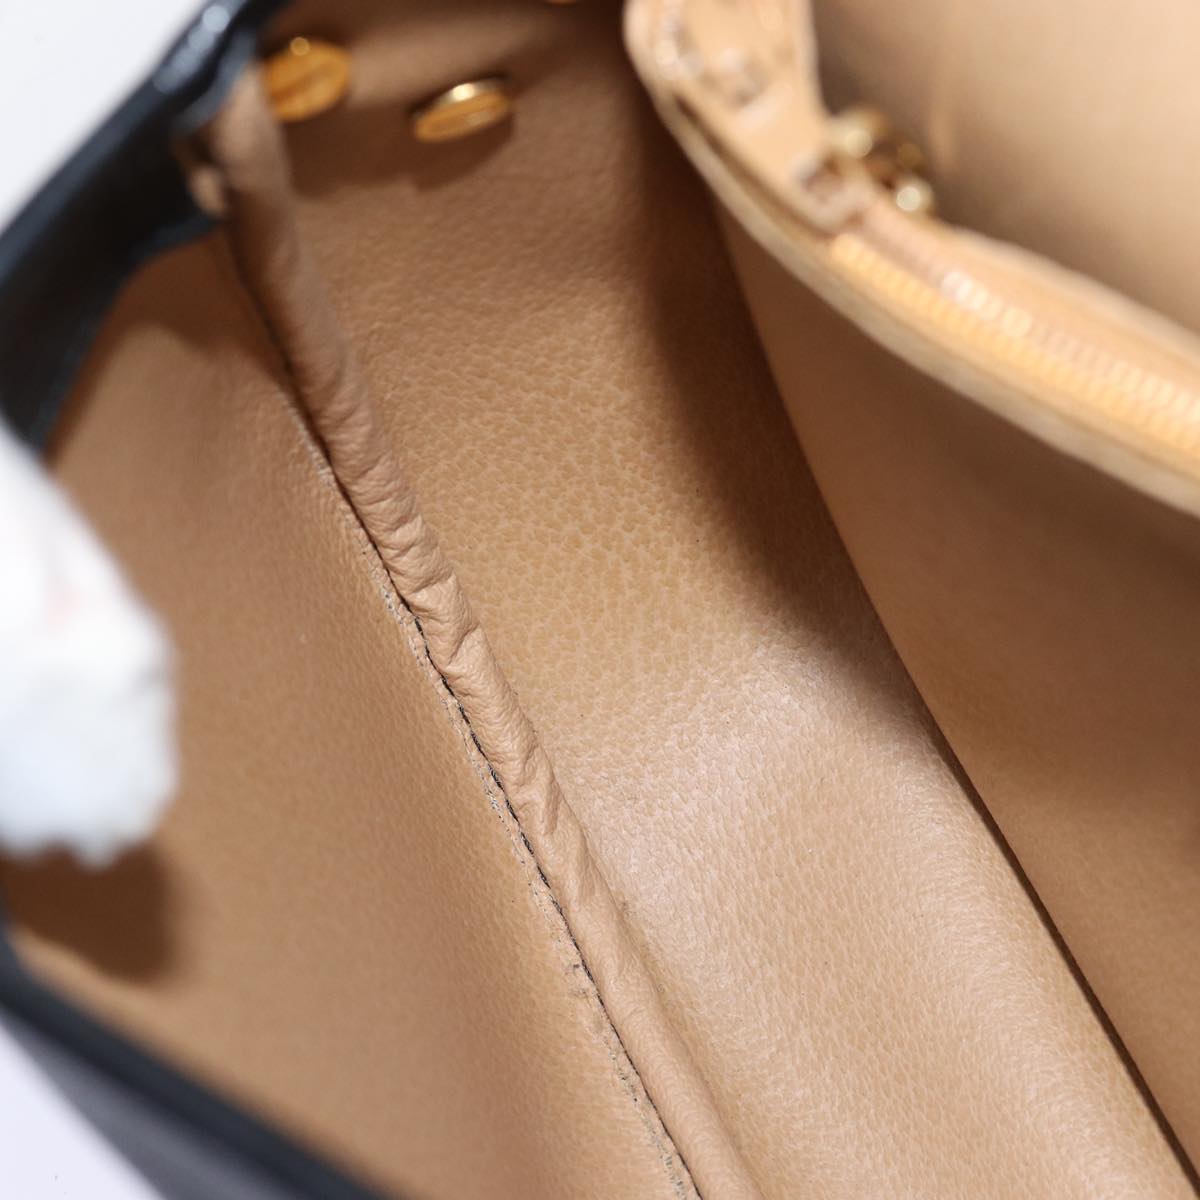 Christian Dior Shoulder Bag Leather Black Auth yk12454